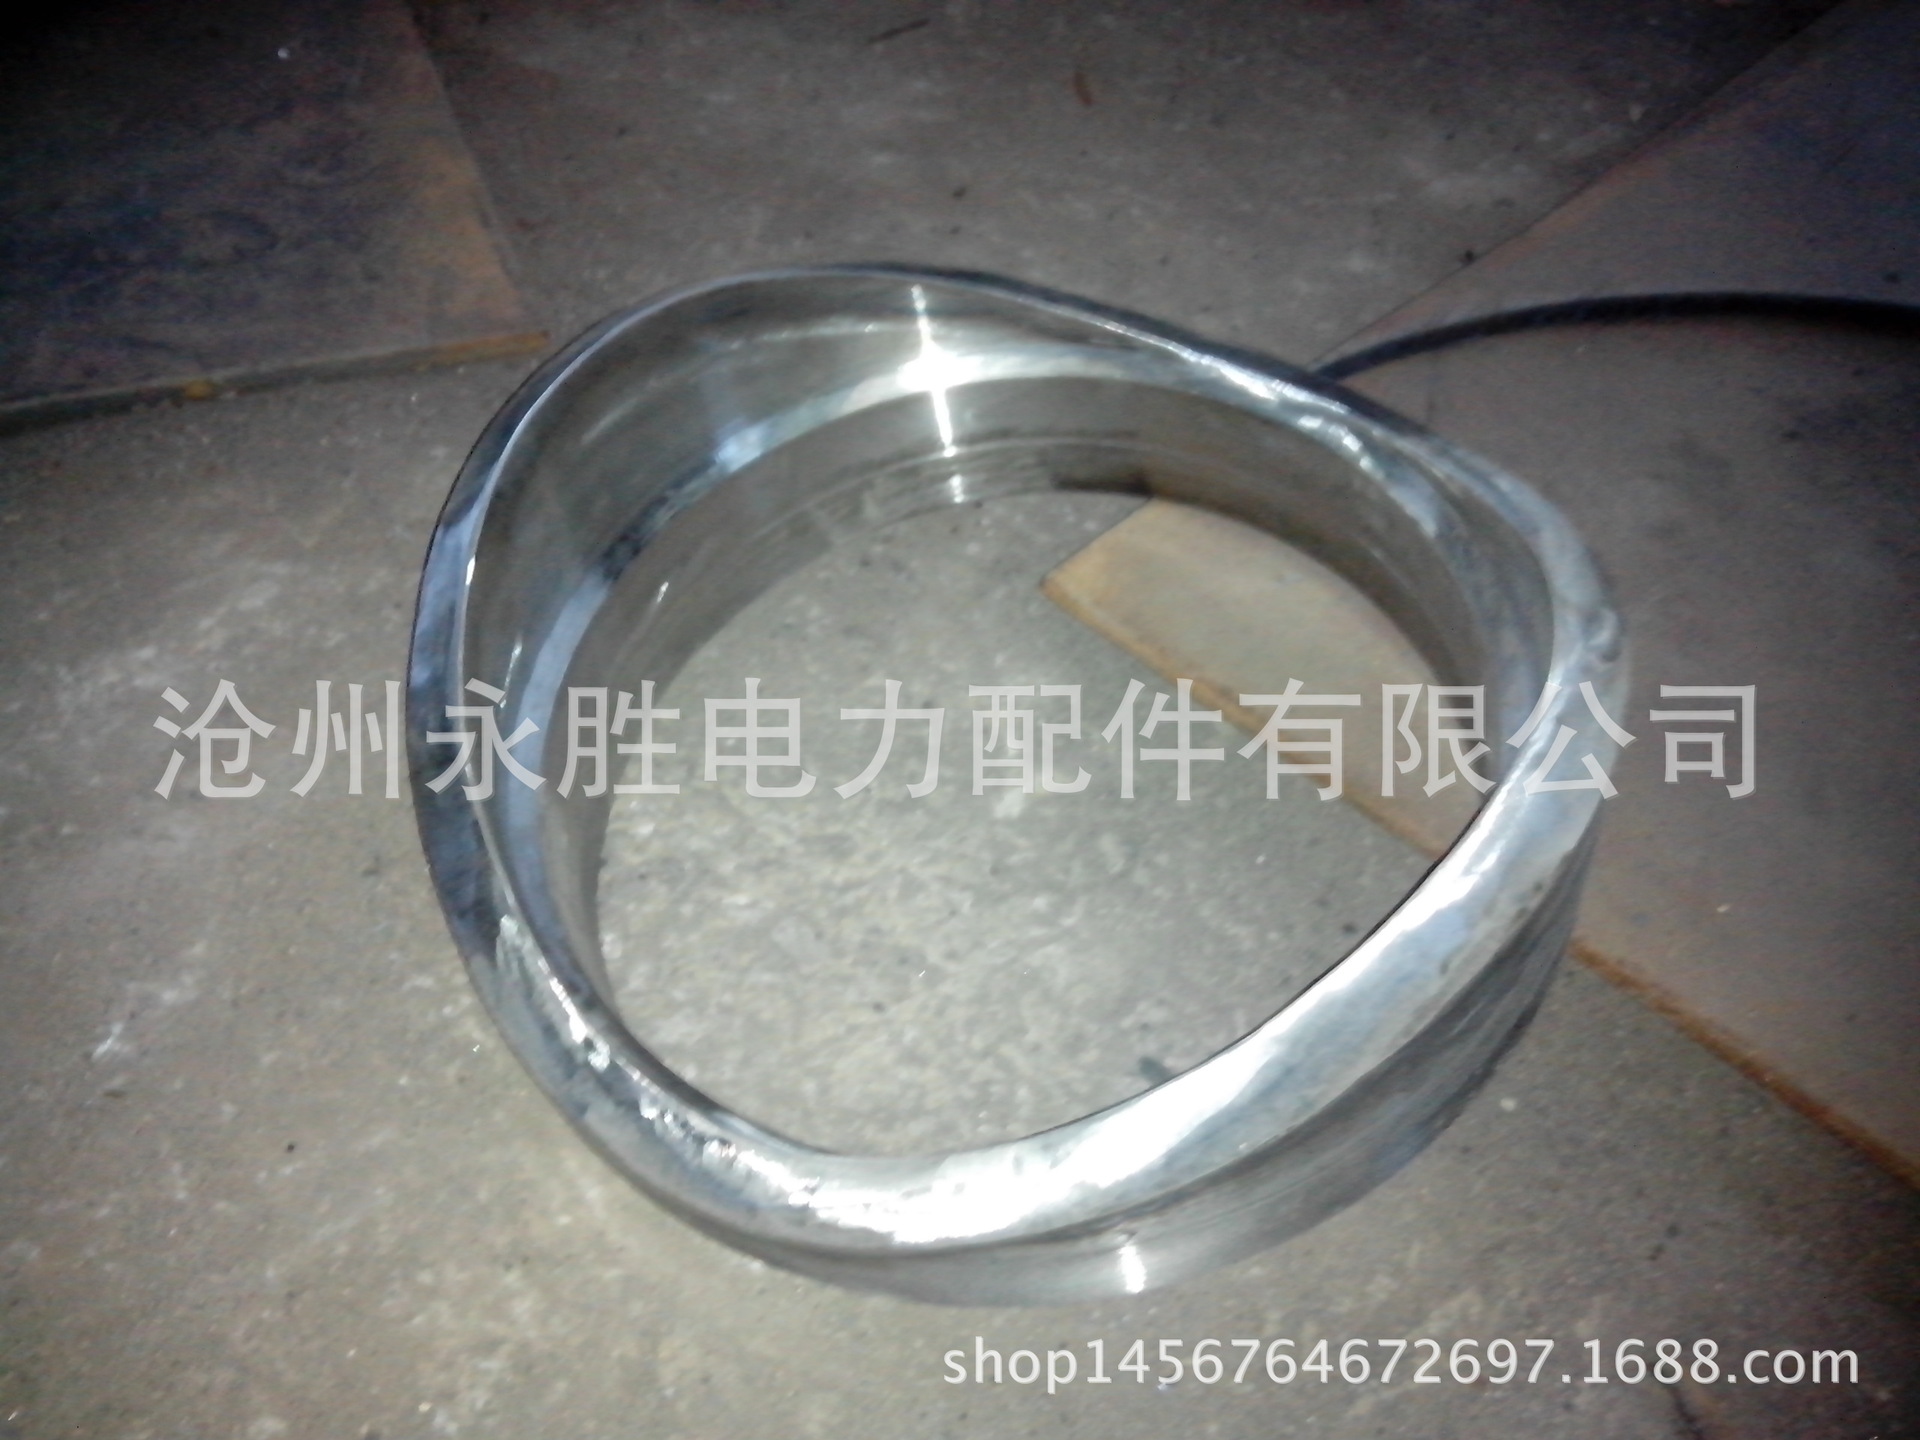 透镜垫标准 金属透镜垫 DH18图集透镜垫 碳钢/尿素钢材质示例图137